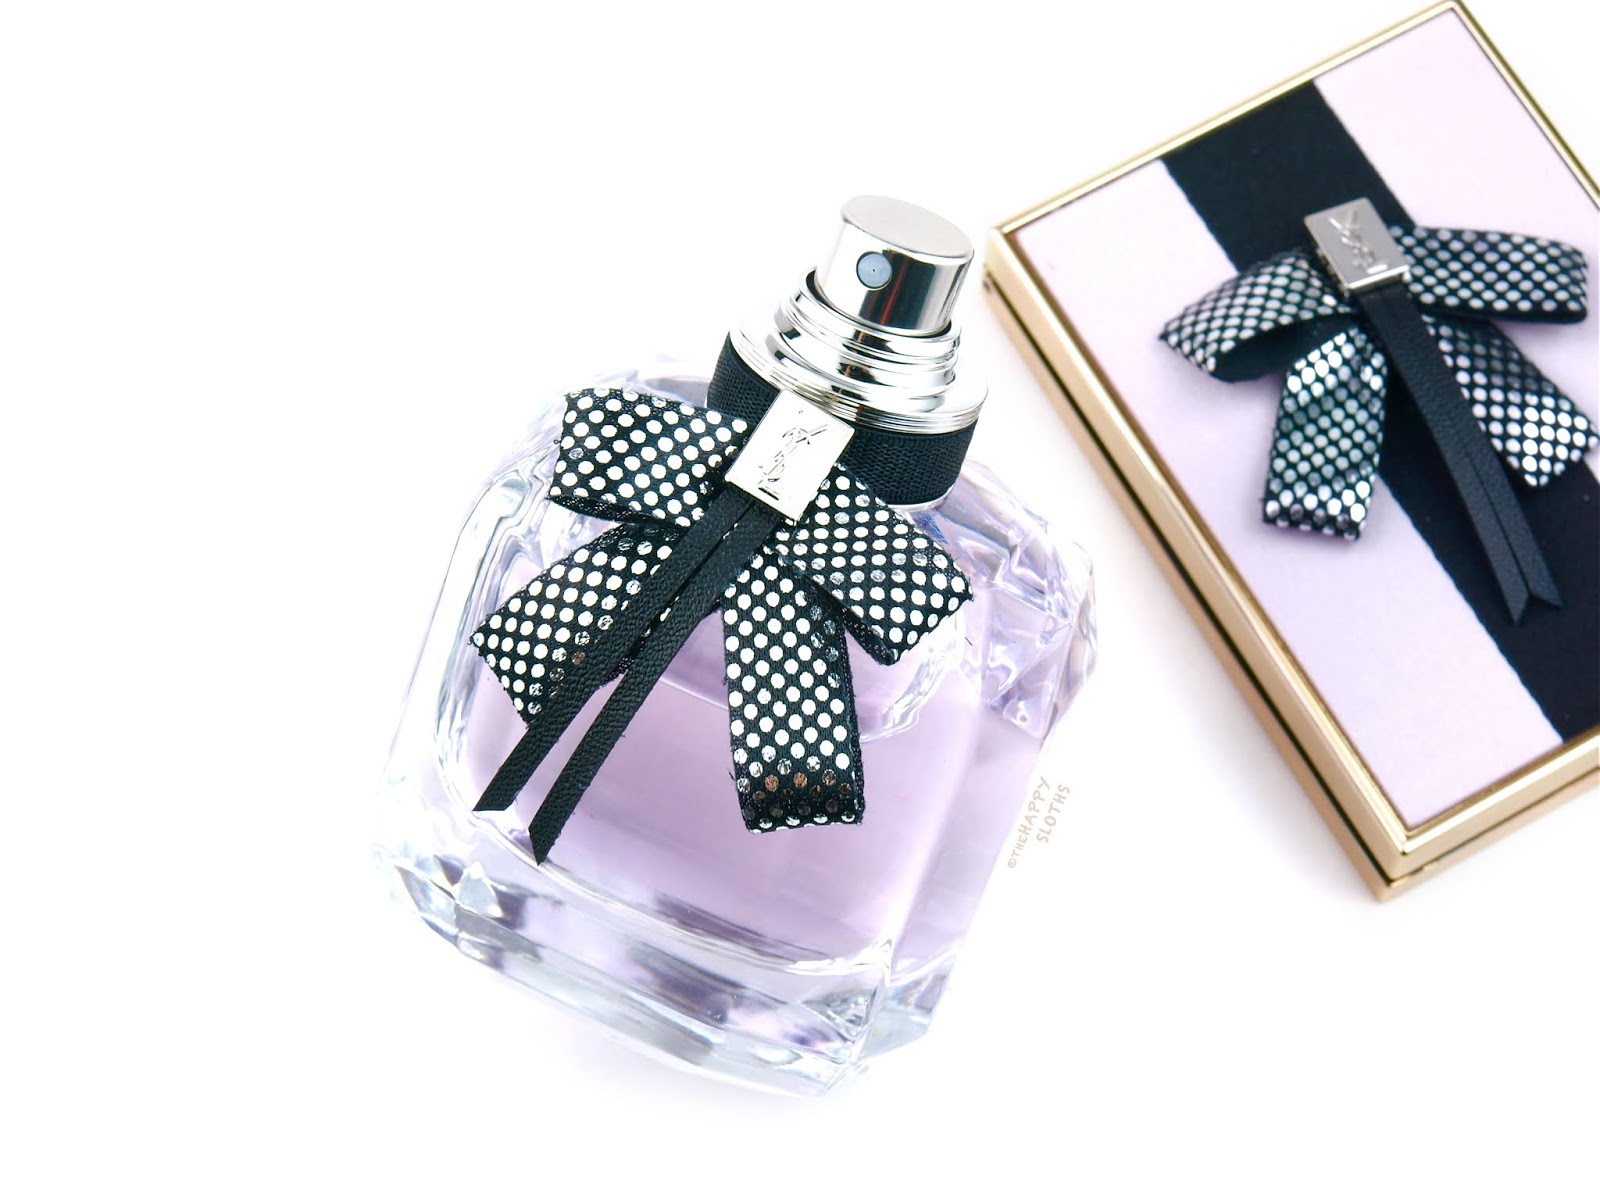 Yves Saint Laurent | Mon Paris Couture Eau de Parfum: Review